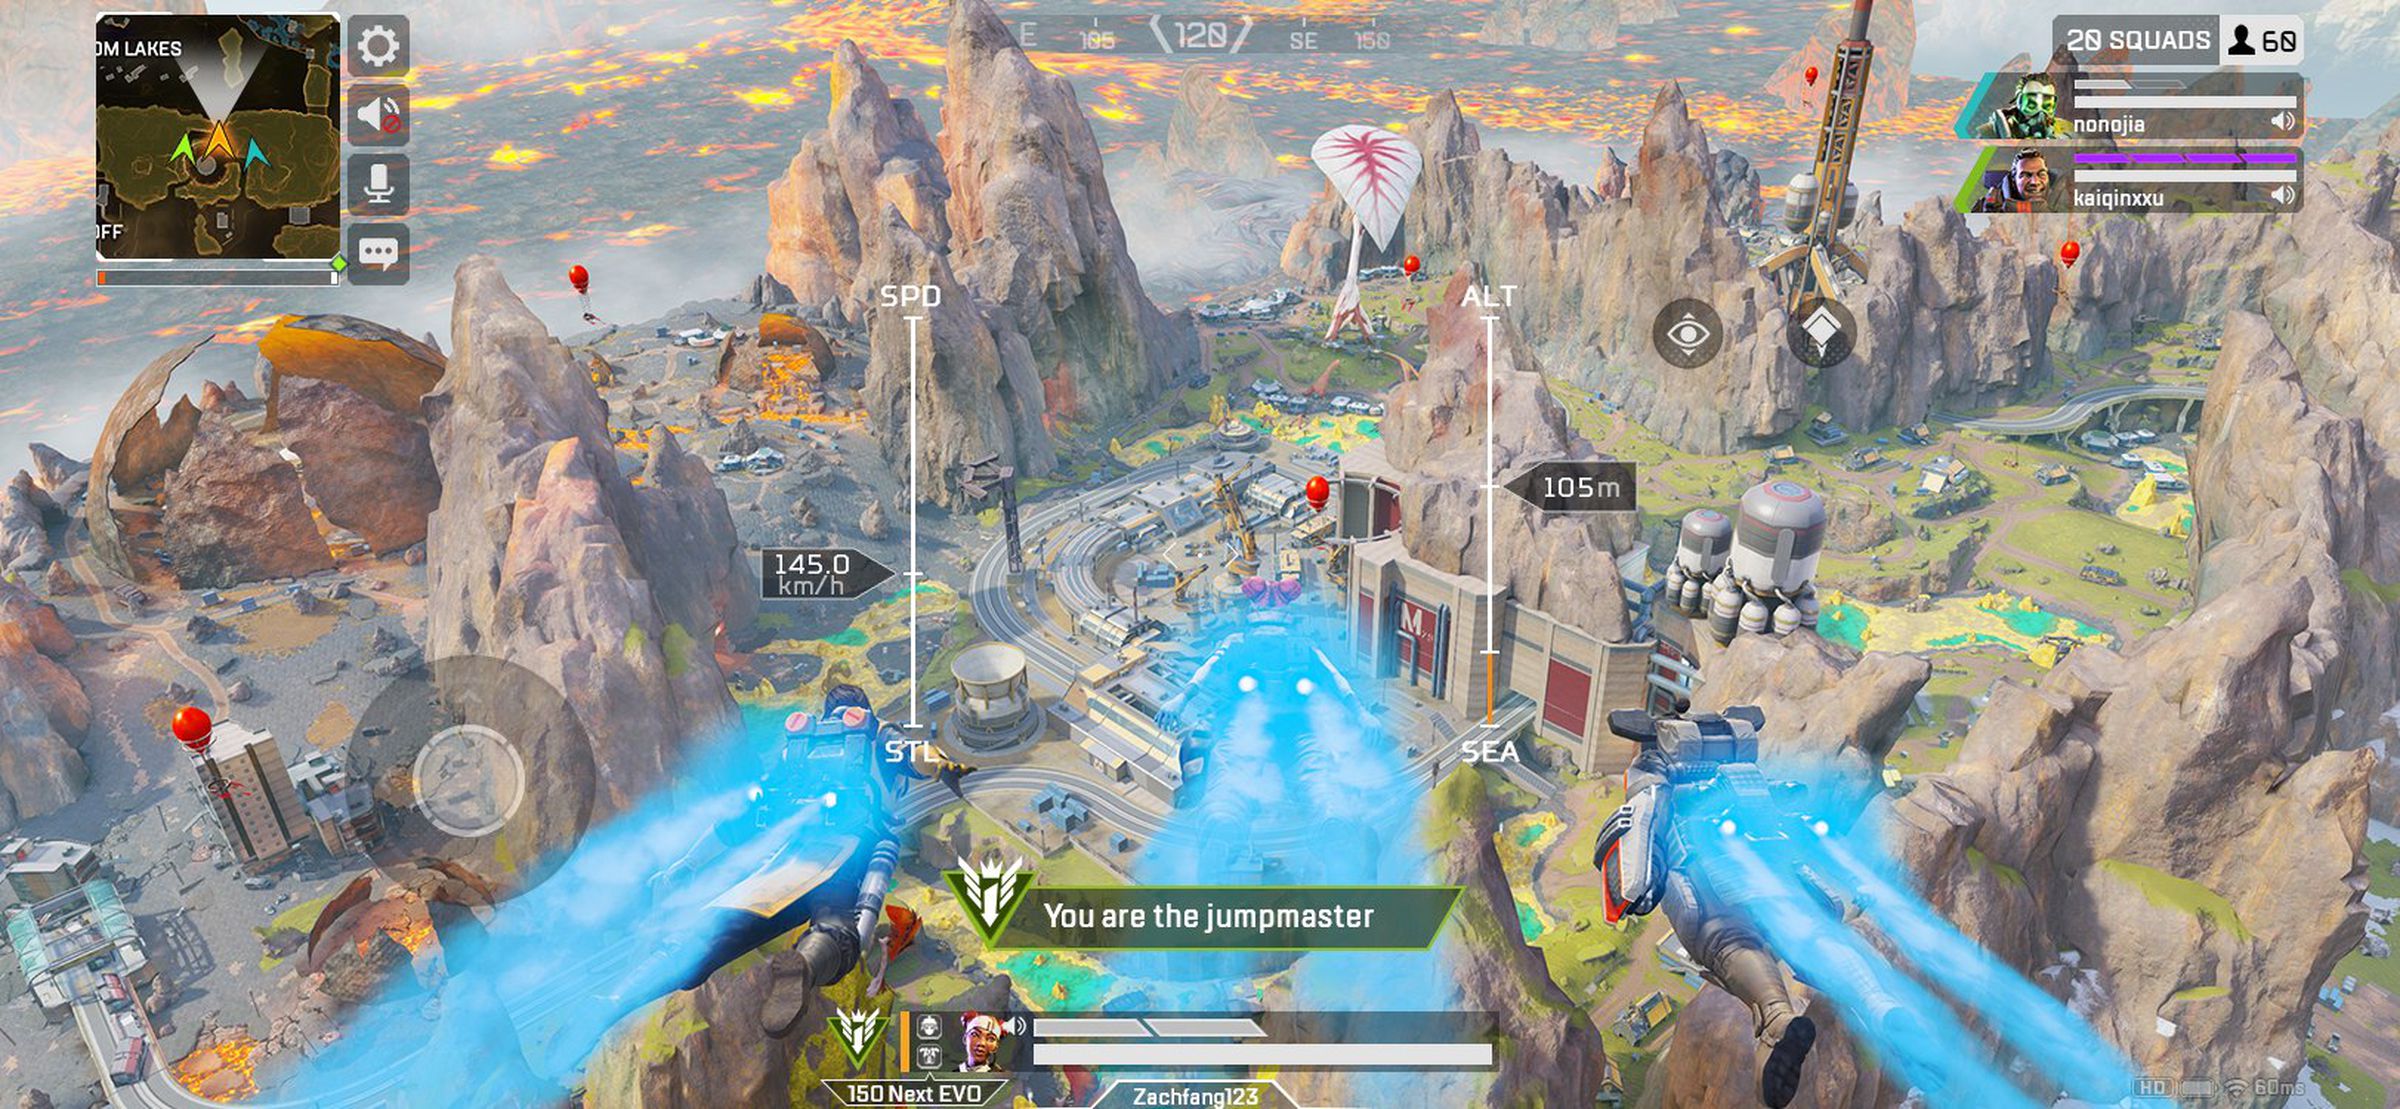 Apex Legends Mobile screenshot: un fiume che scorre attraverso un paesaggio roccioso;  dice la didascalia 